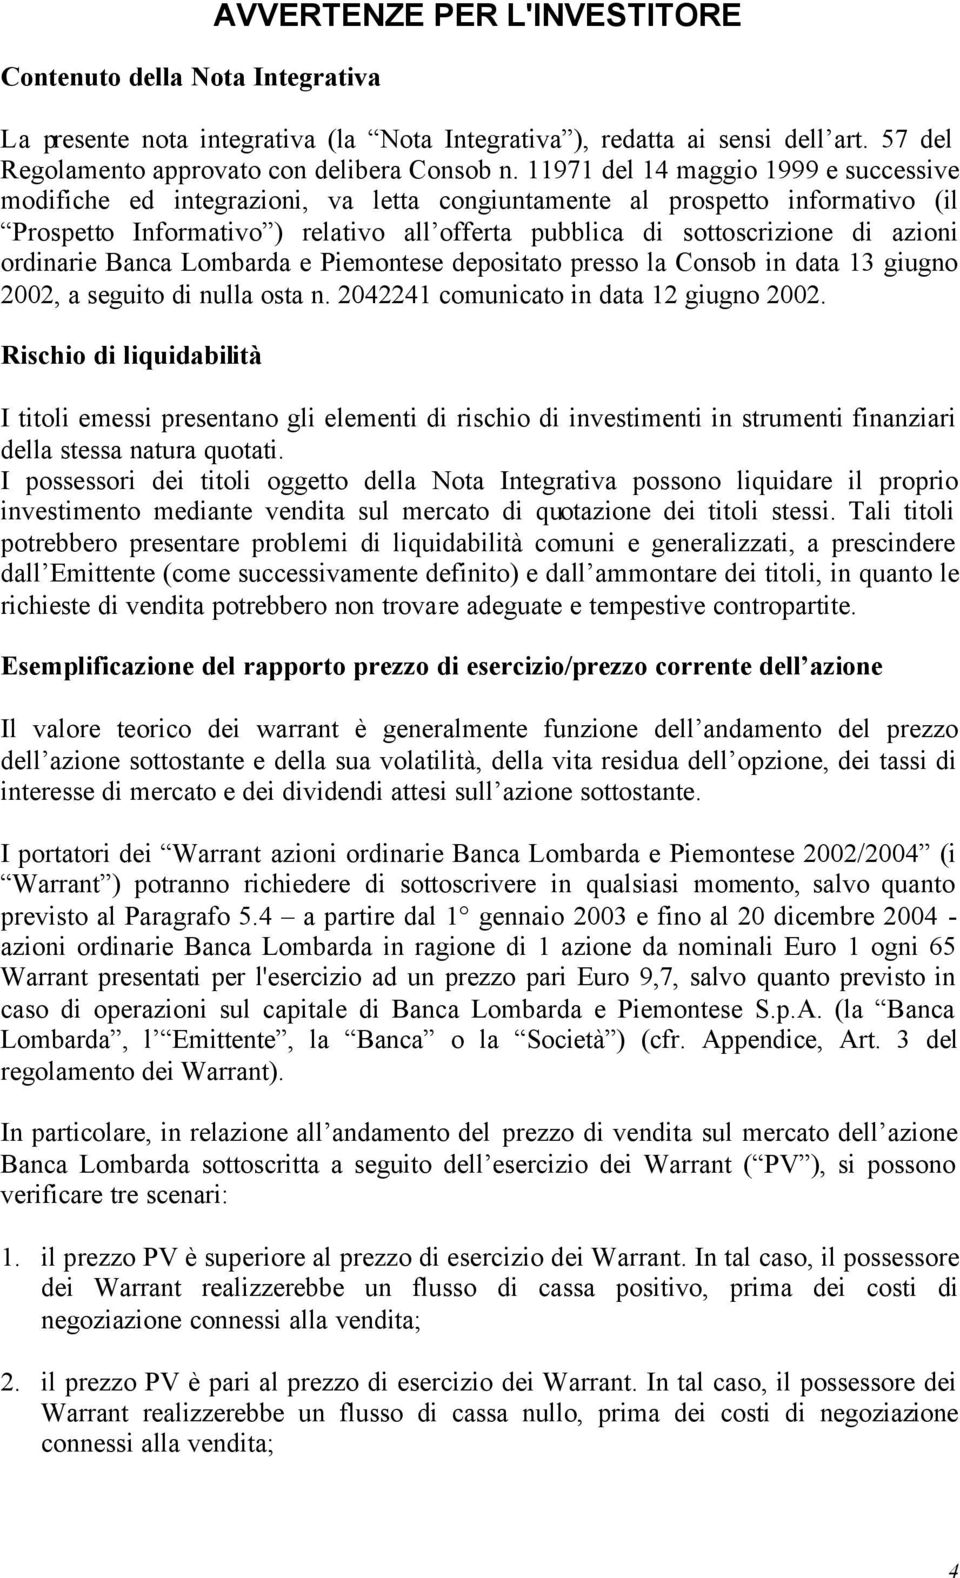 ordinarie Banca Lombarda e Piemontese depositato presso la Consob in data 13 giugno 2002, a seguito di nulla osta n. 2042241 comunicato in data 12 giugno 2002.